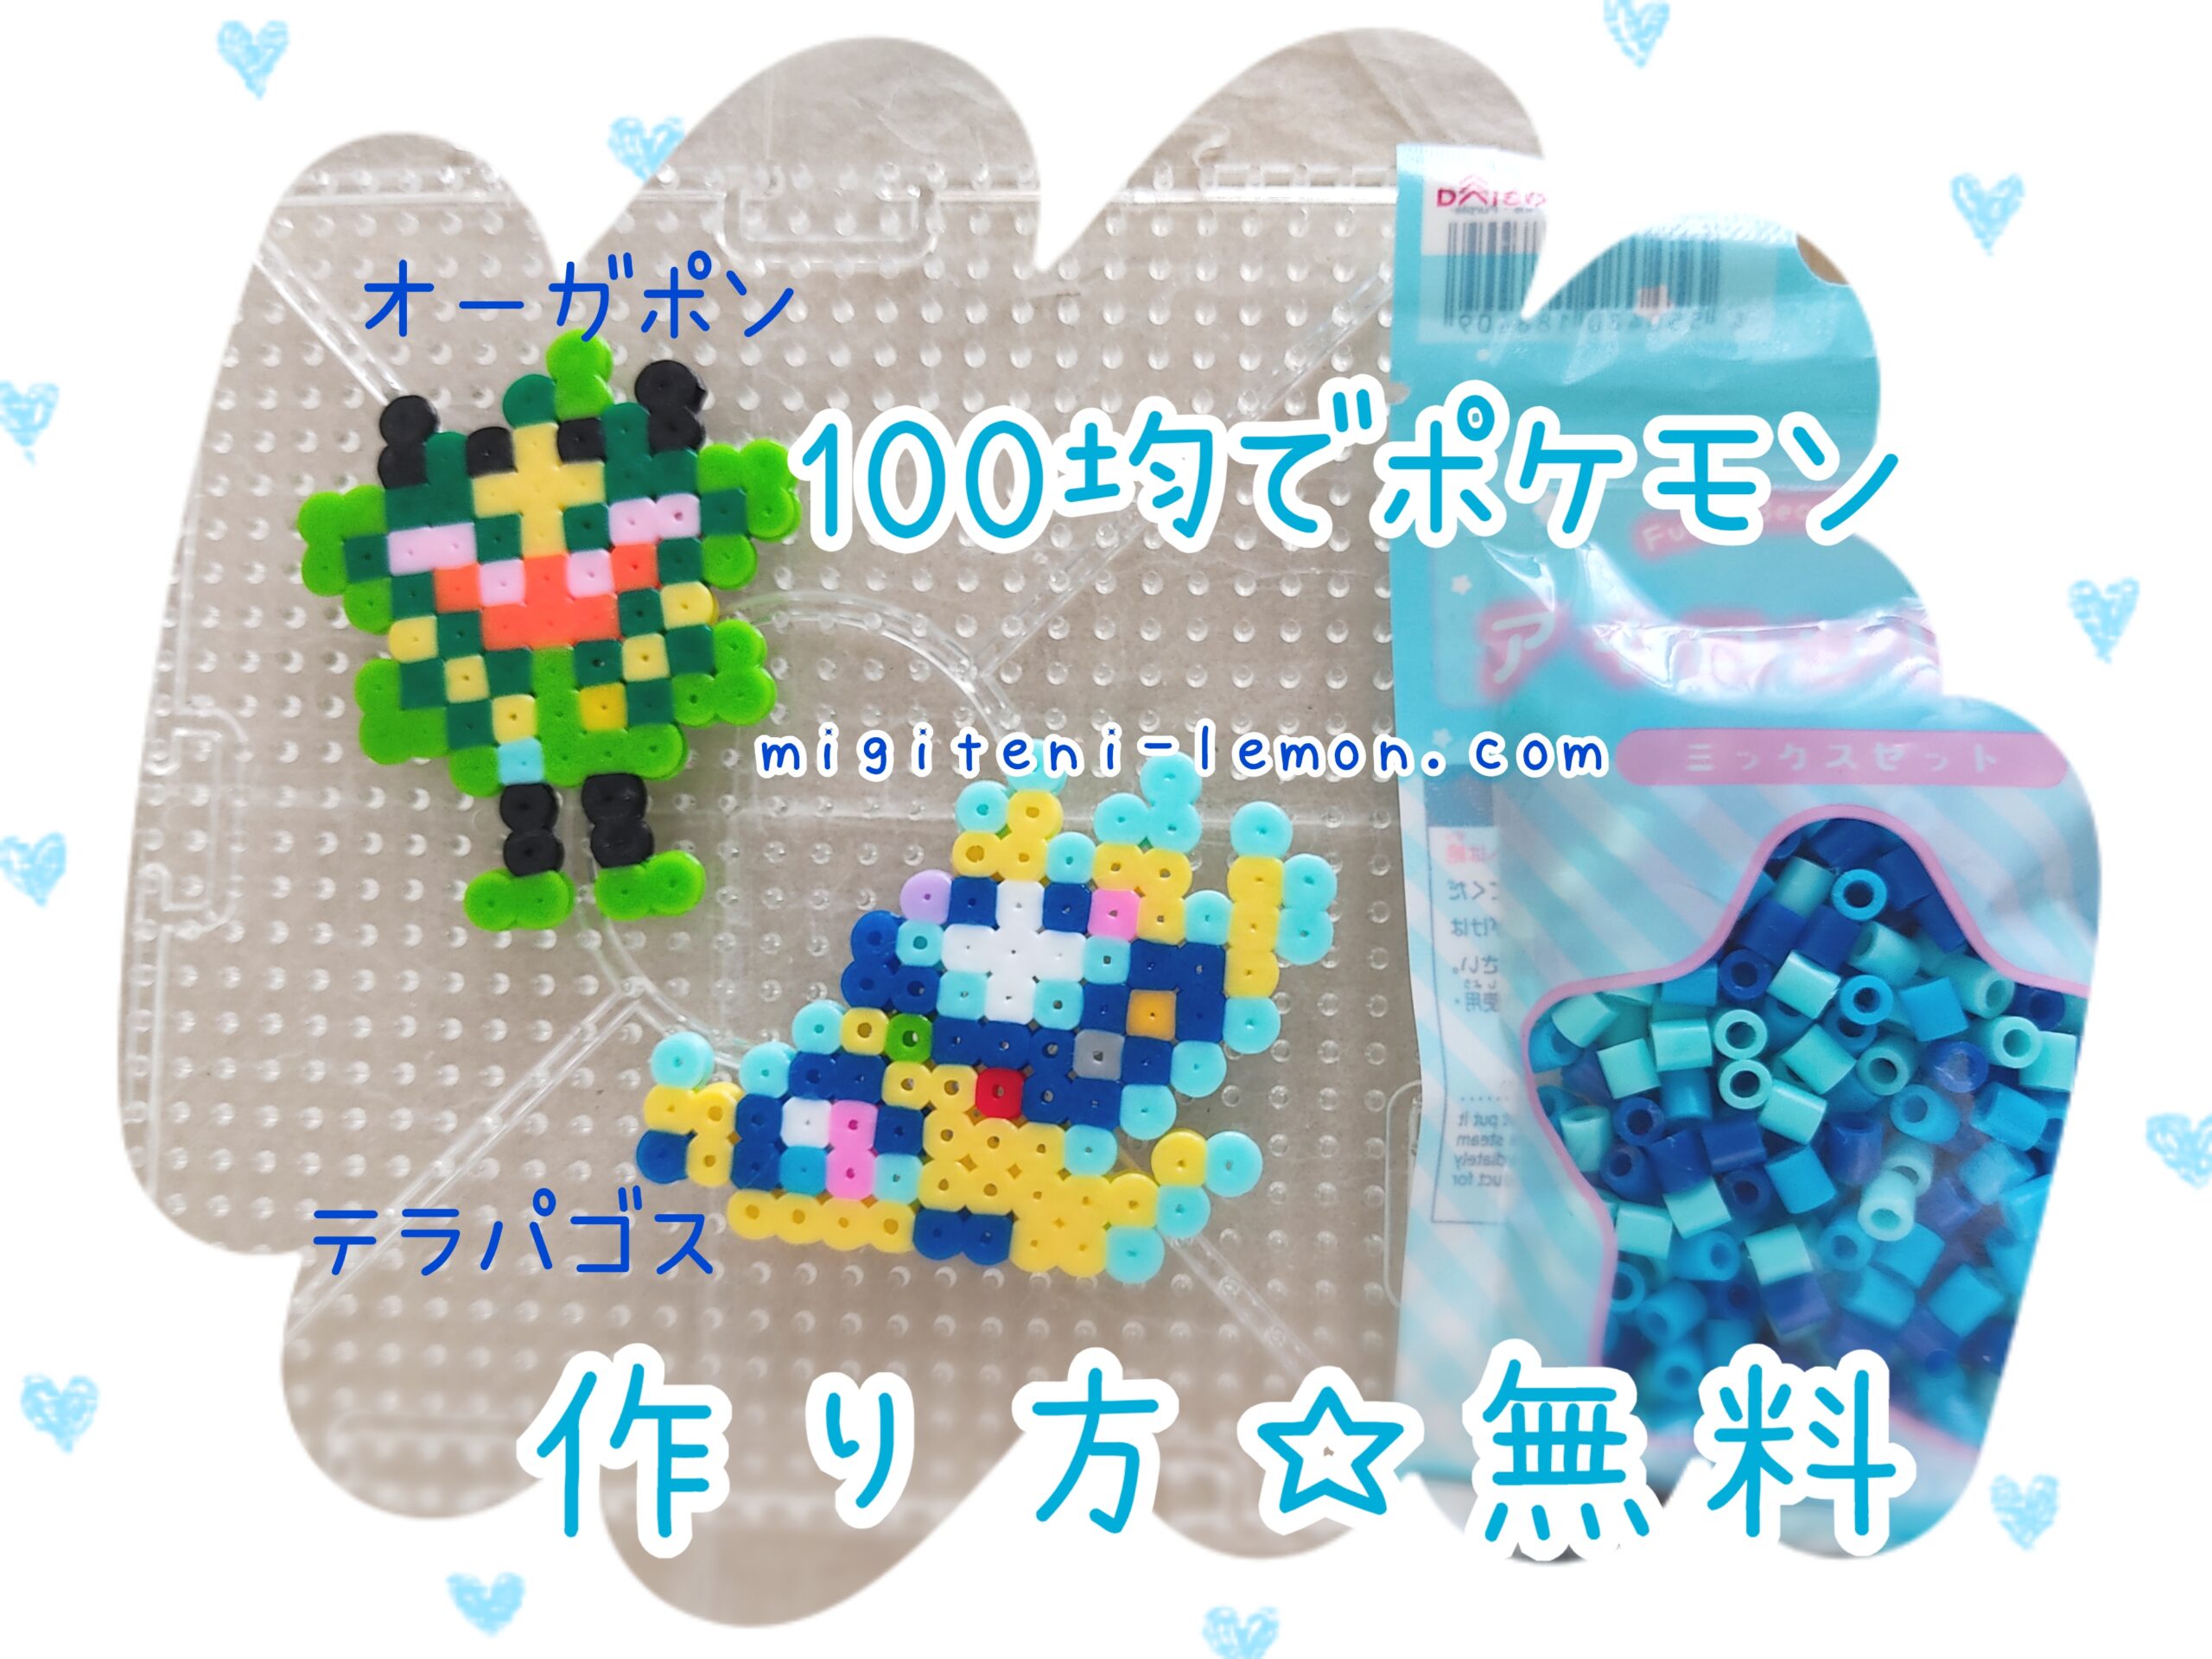 ogerpon-terapagos-free-pokemon-beads-zuan